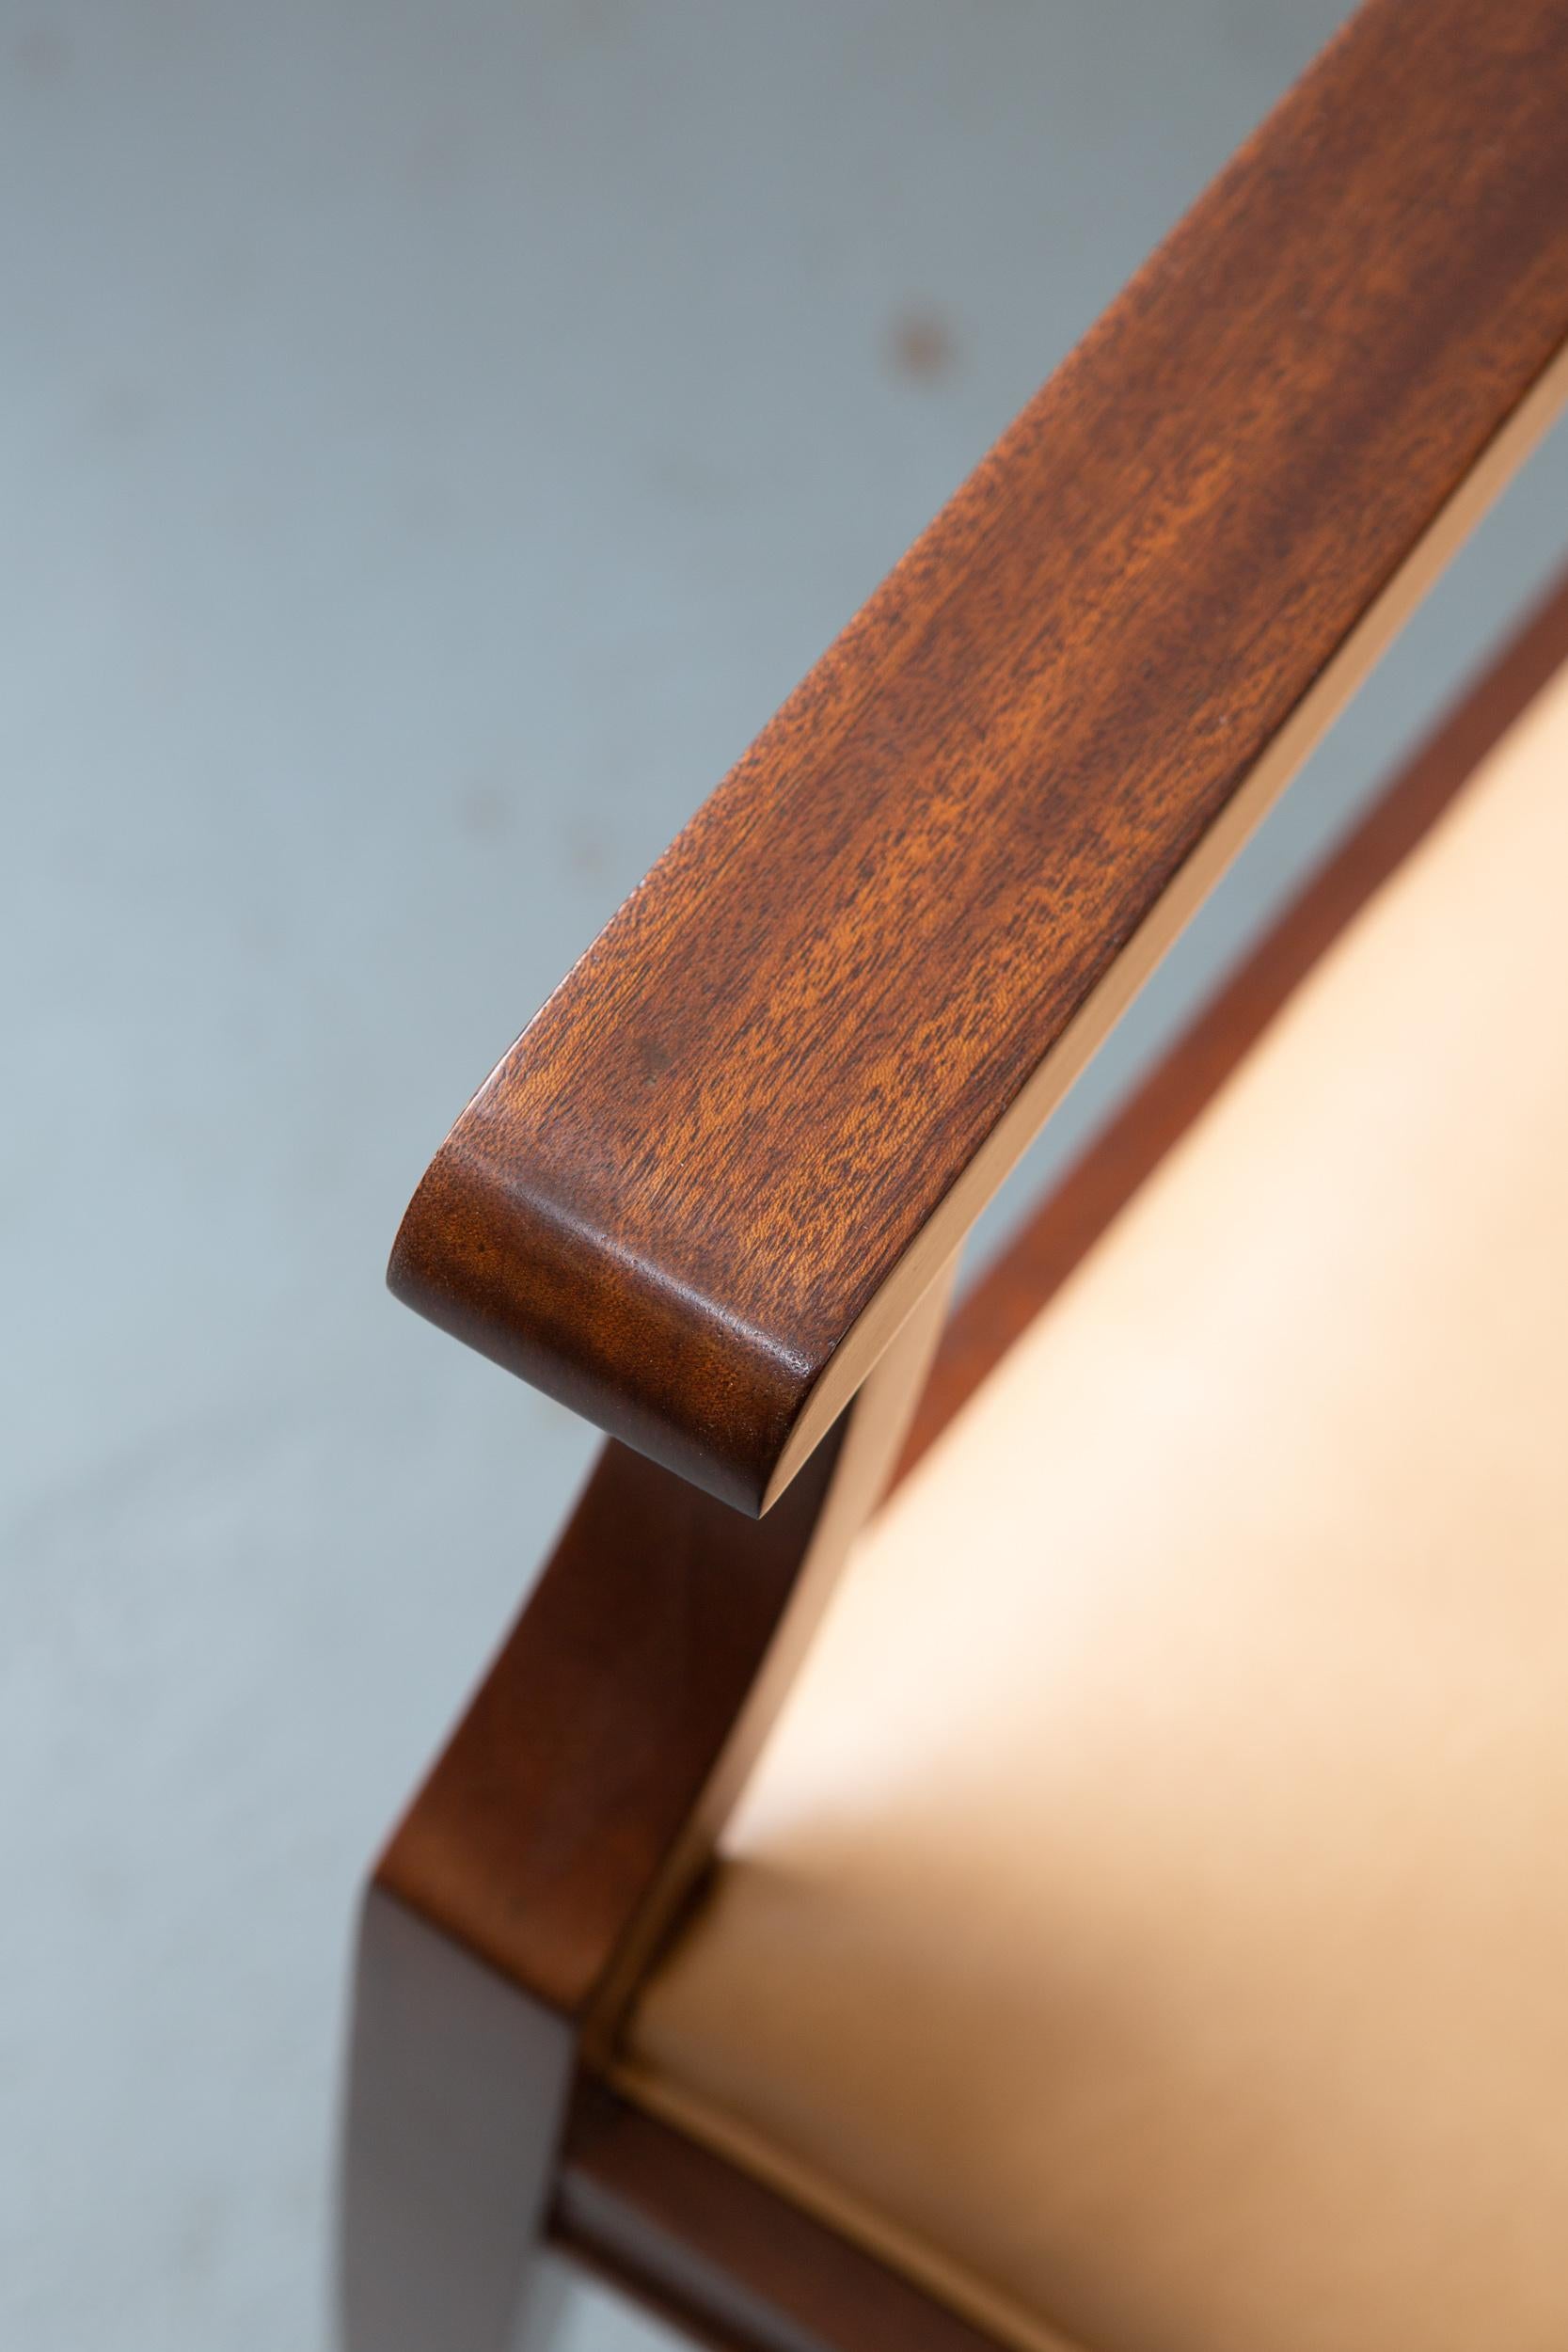 Fauteuil sur mesure en acajou, majestueux et structurel, basé sur un original des années 1940. Très robuste et beau, avec des lignes épurées. Les pieds légèrement effilés et le cuir beige finissent merveilleusement bien la chaise.